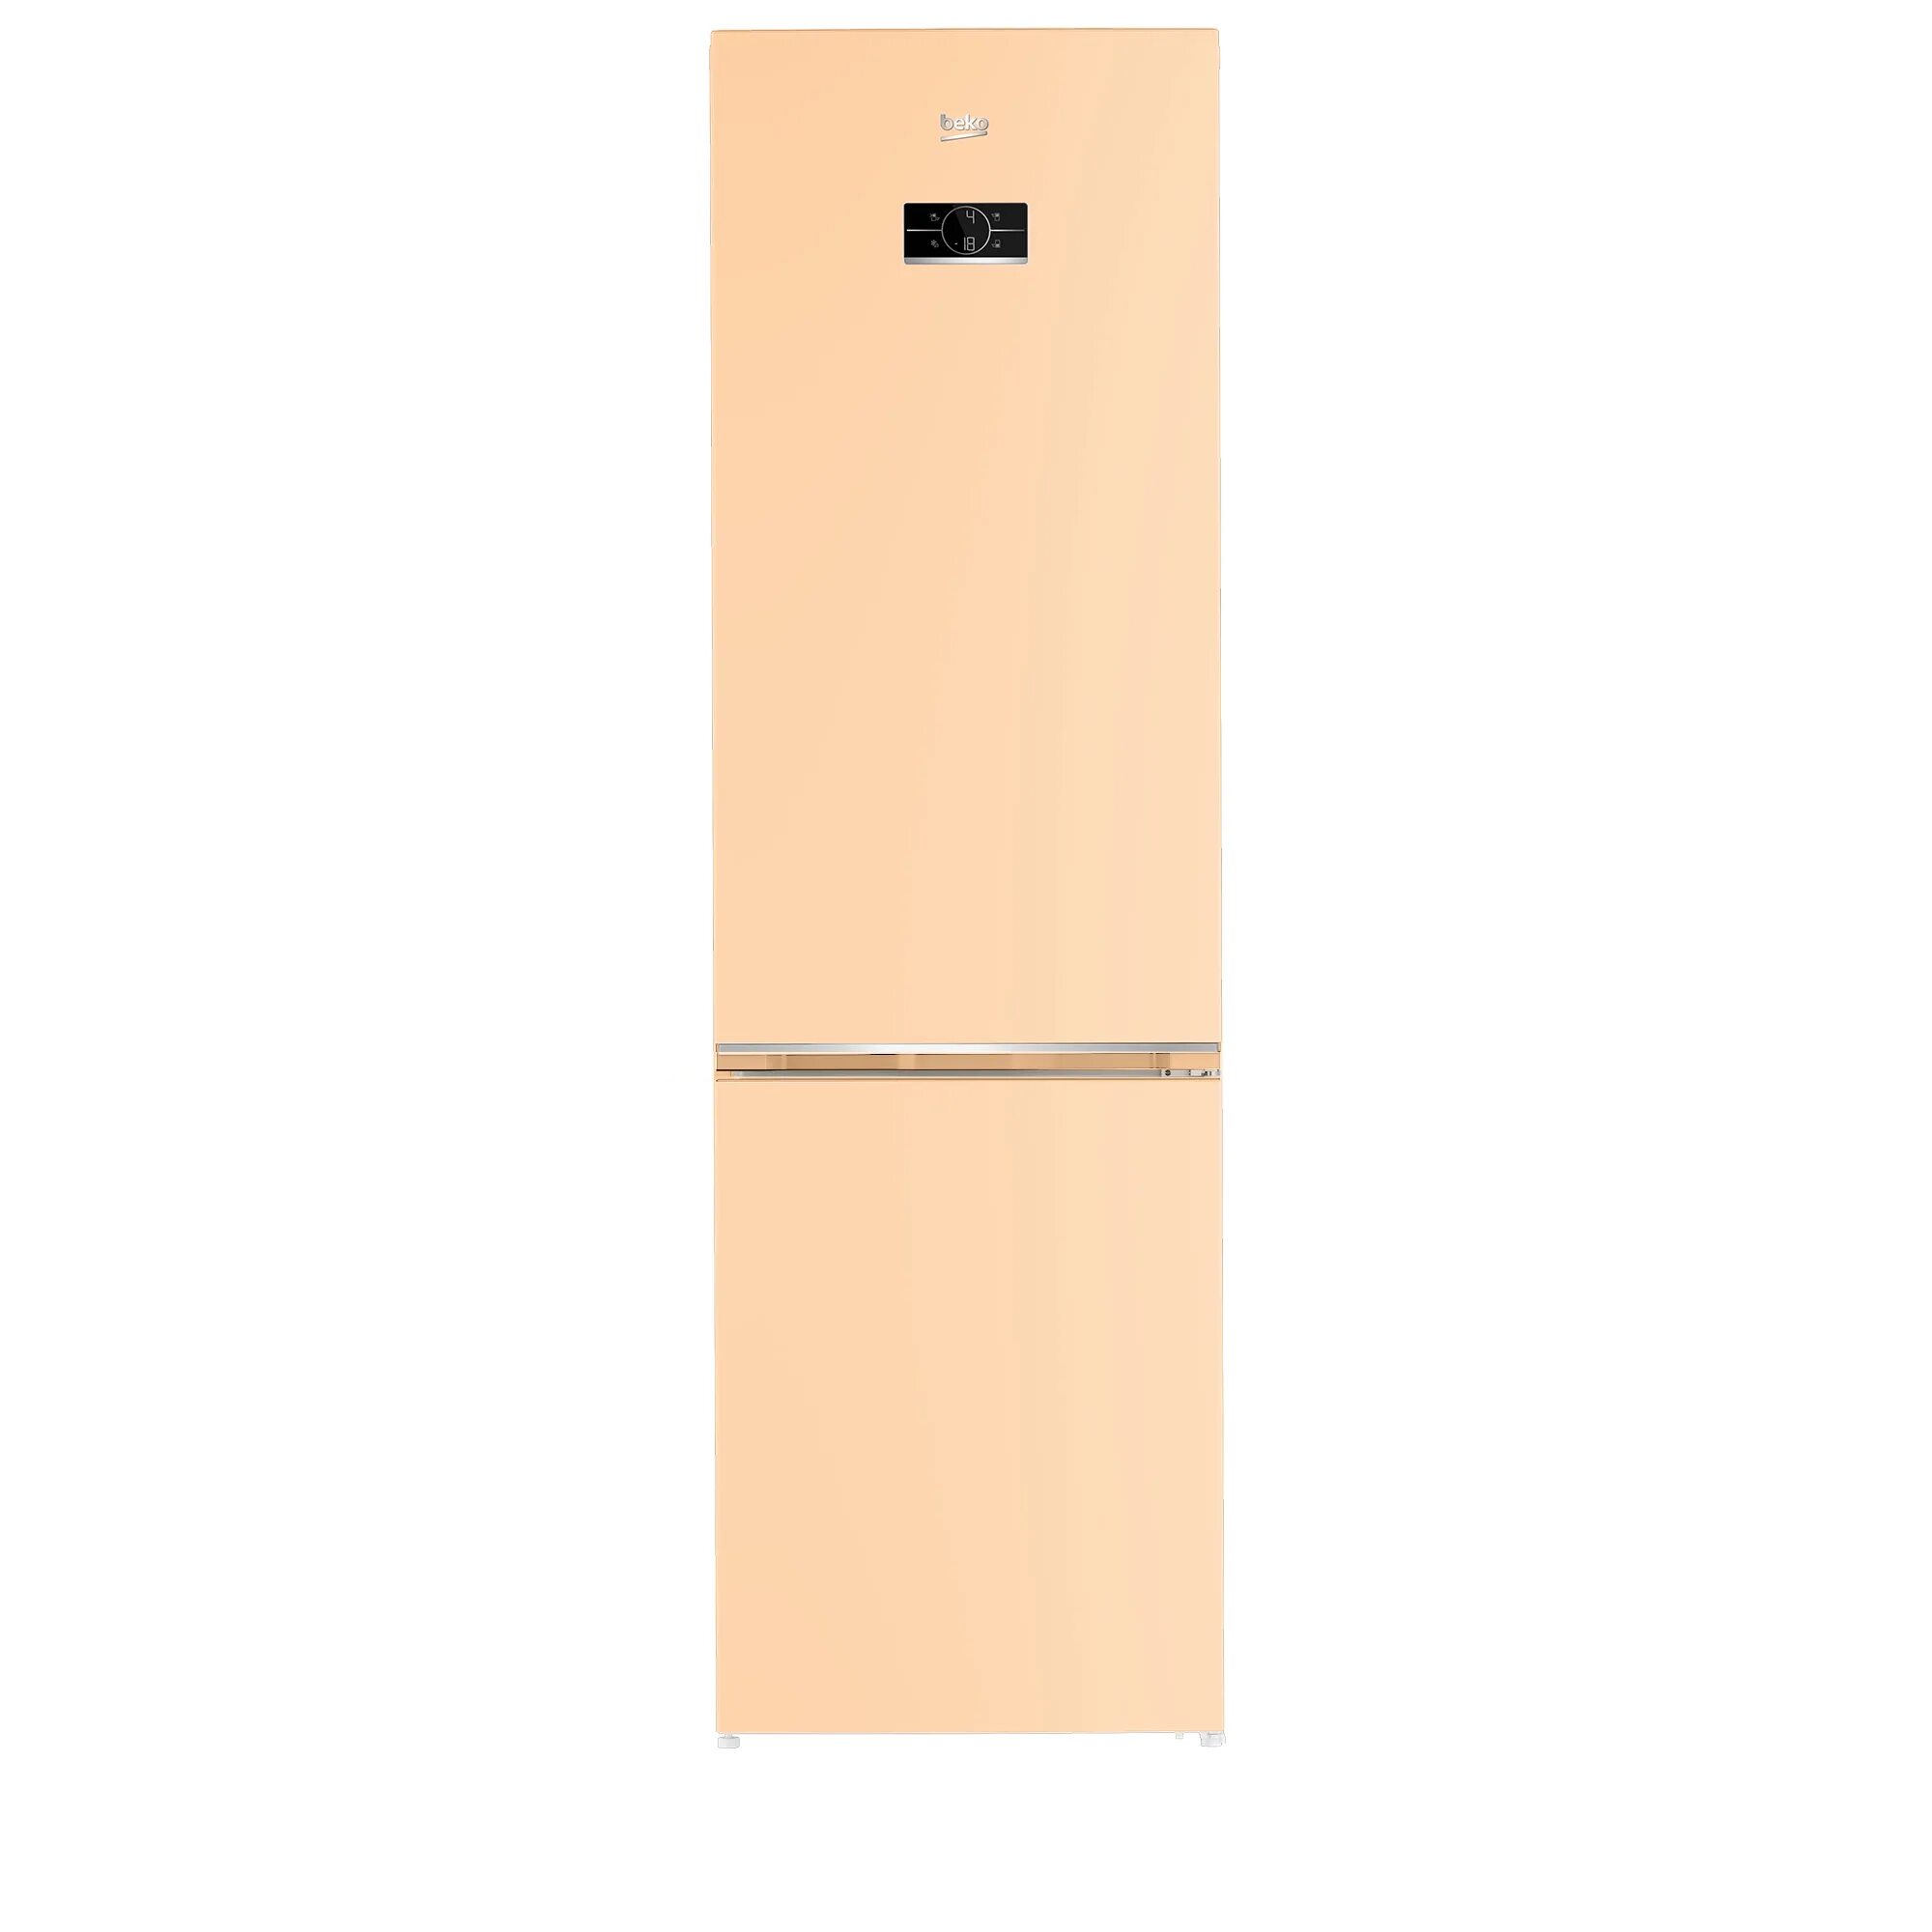 Холодильник LG 509 cetl. Холодильник Jacky's Jr fv1860. Bosch kgn36nk21r. Холодильник Jacky's Jr fs227ms. Узкий холодильник 50 купить